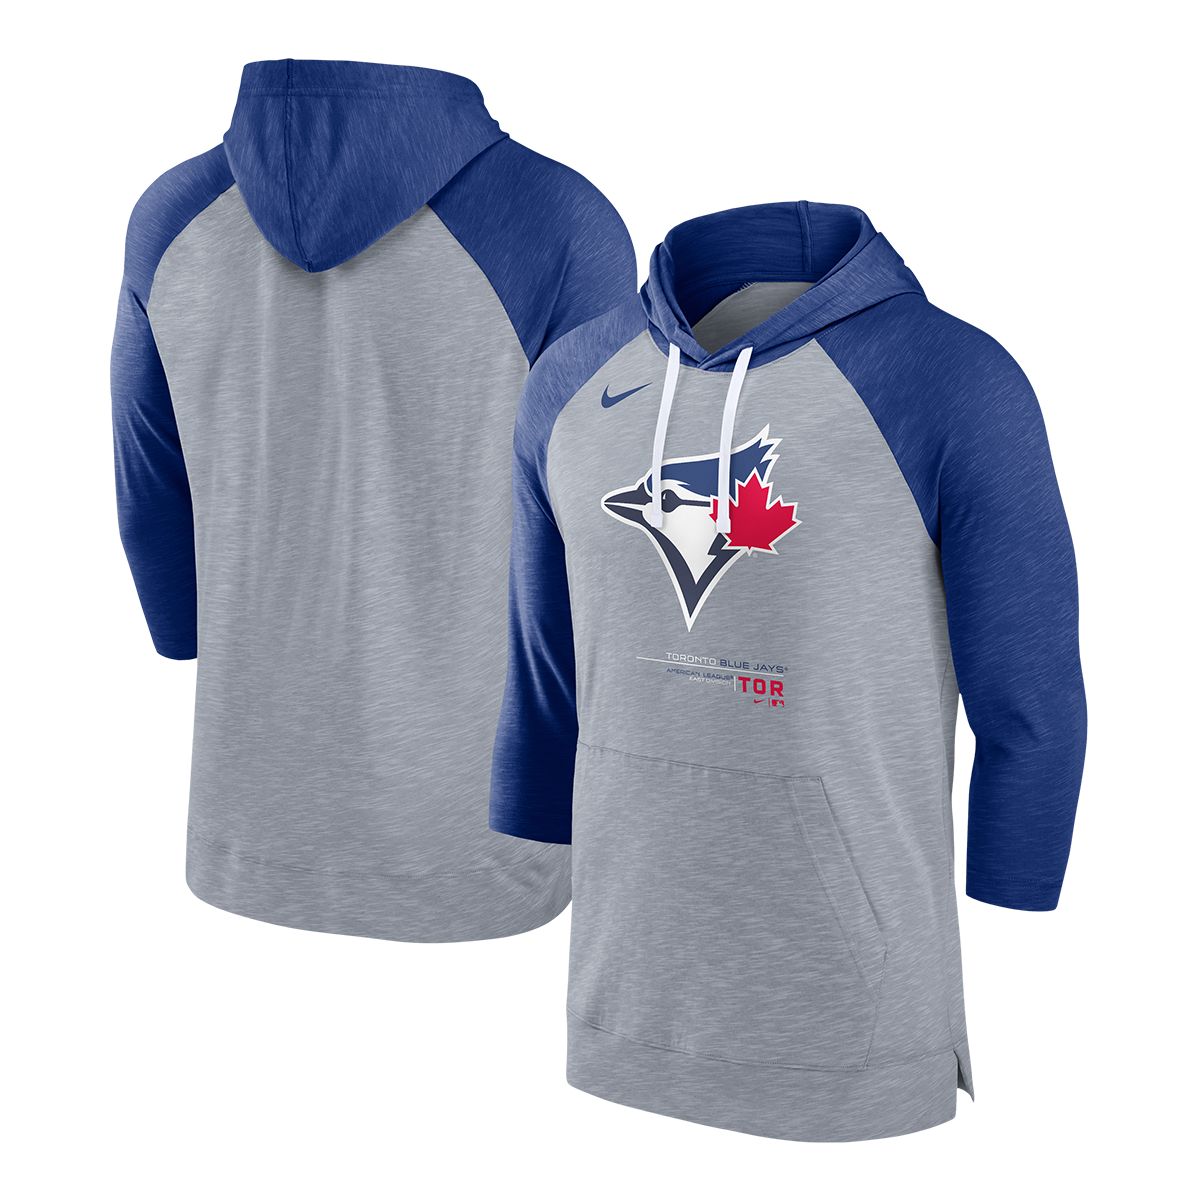 Nike Men's Royal Toronto Blue Jays Swoosh NeighborHOOD Pullover Hoodie